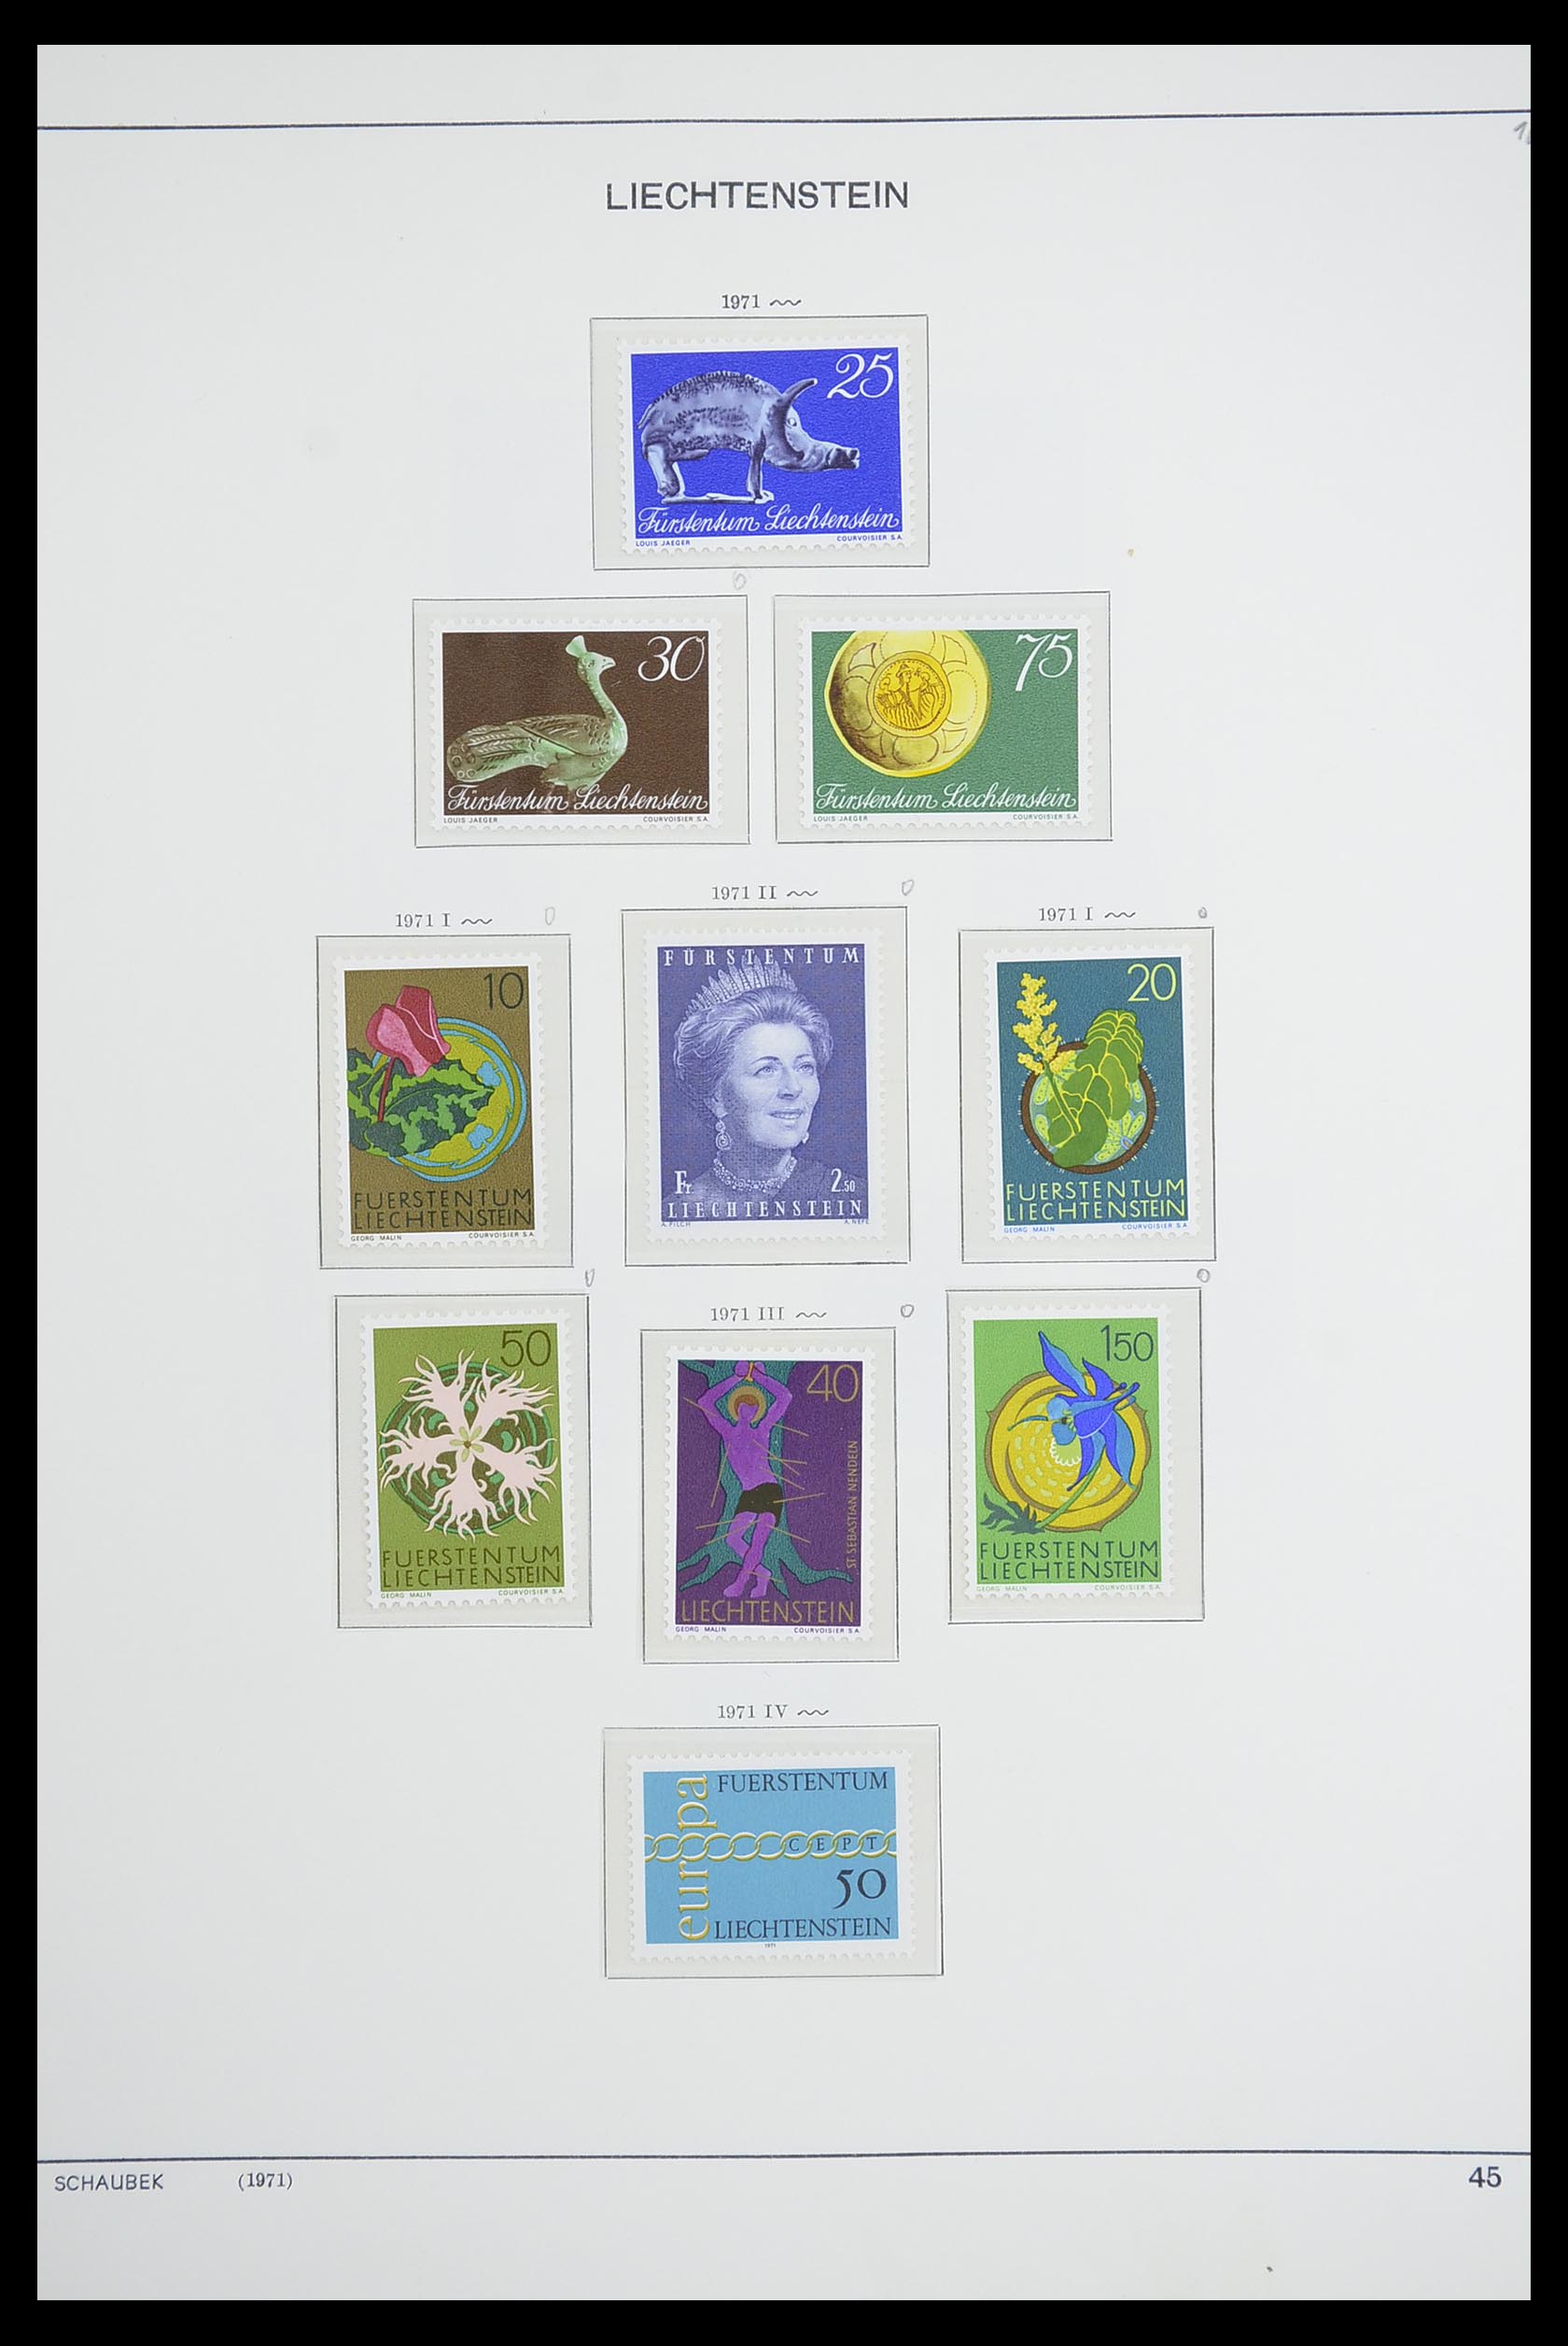 33274 053 - Stamp collection 33274 Liechtenstein 1912-1996.